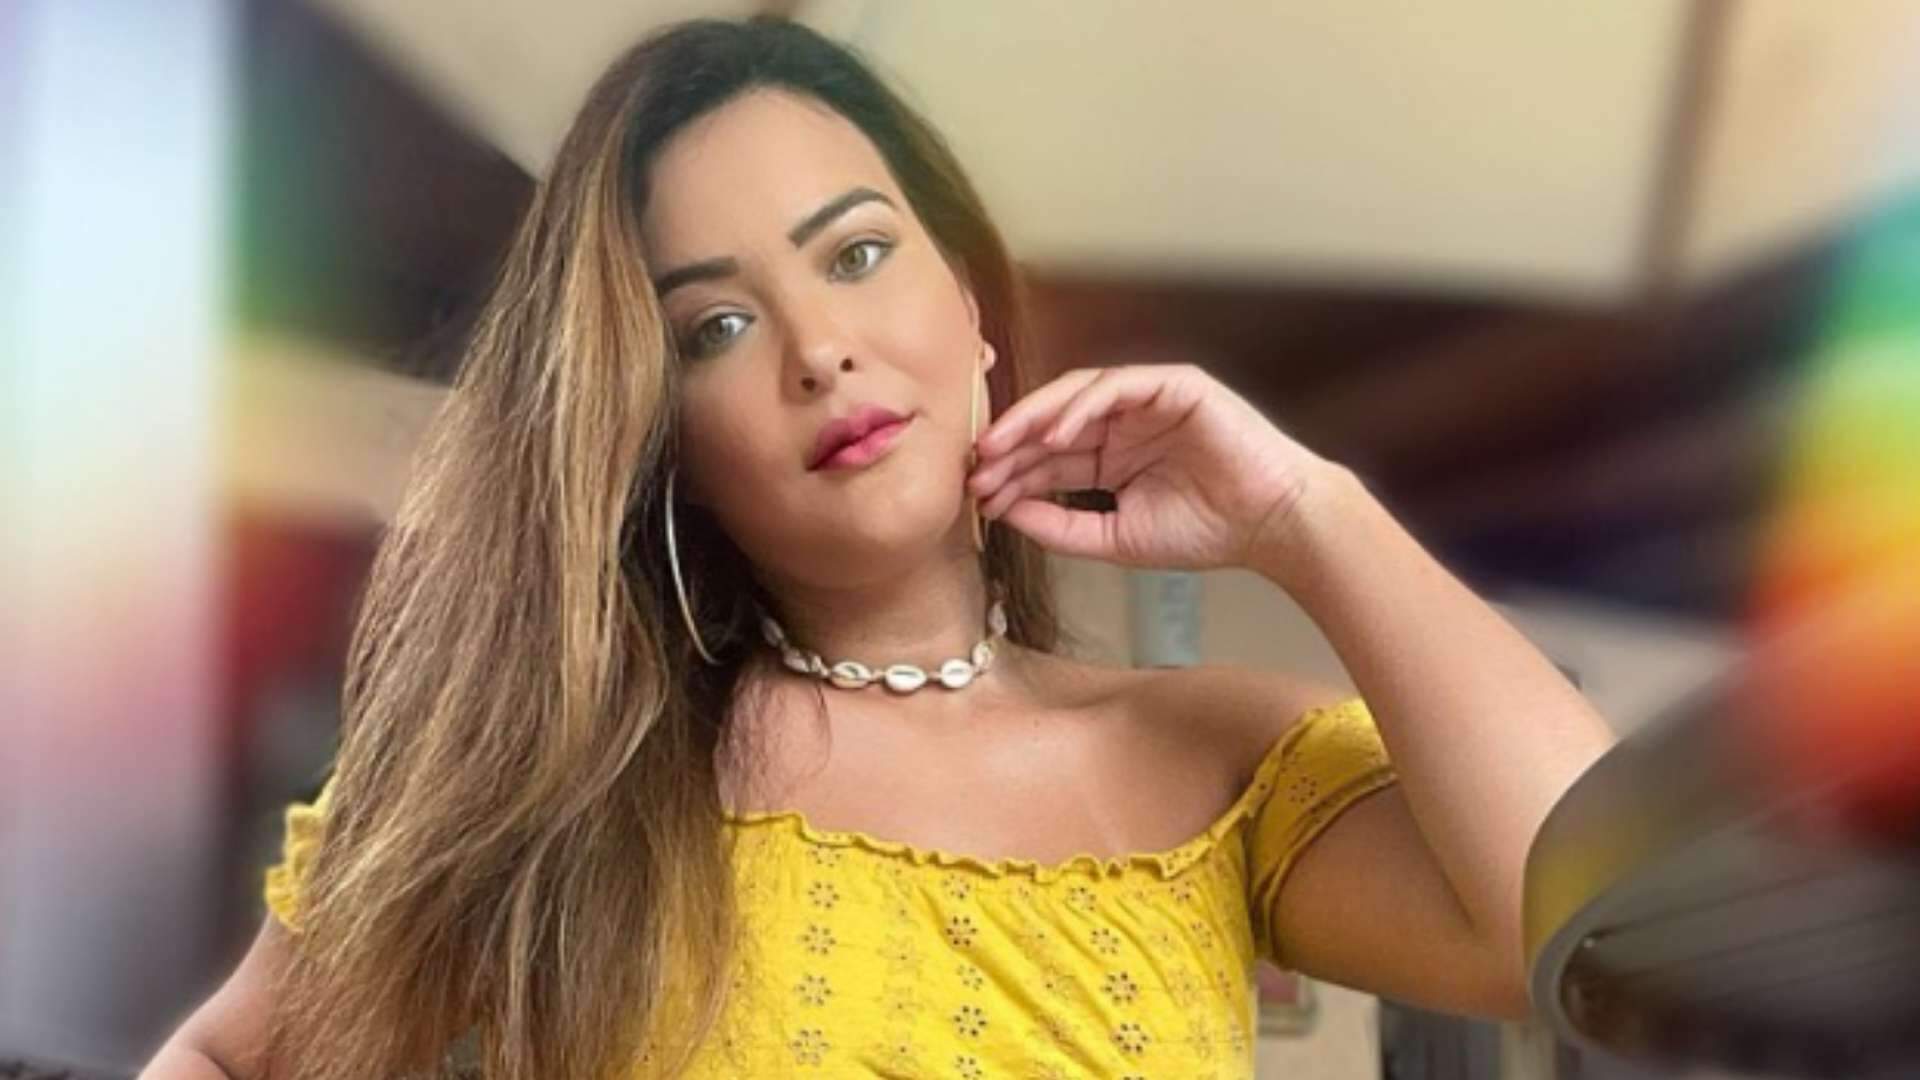 Geisy Arruda aposta em look romântico durante viagem ao Maranhão: “Quase uma Maria Marruá” - Metropolitana FM